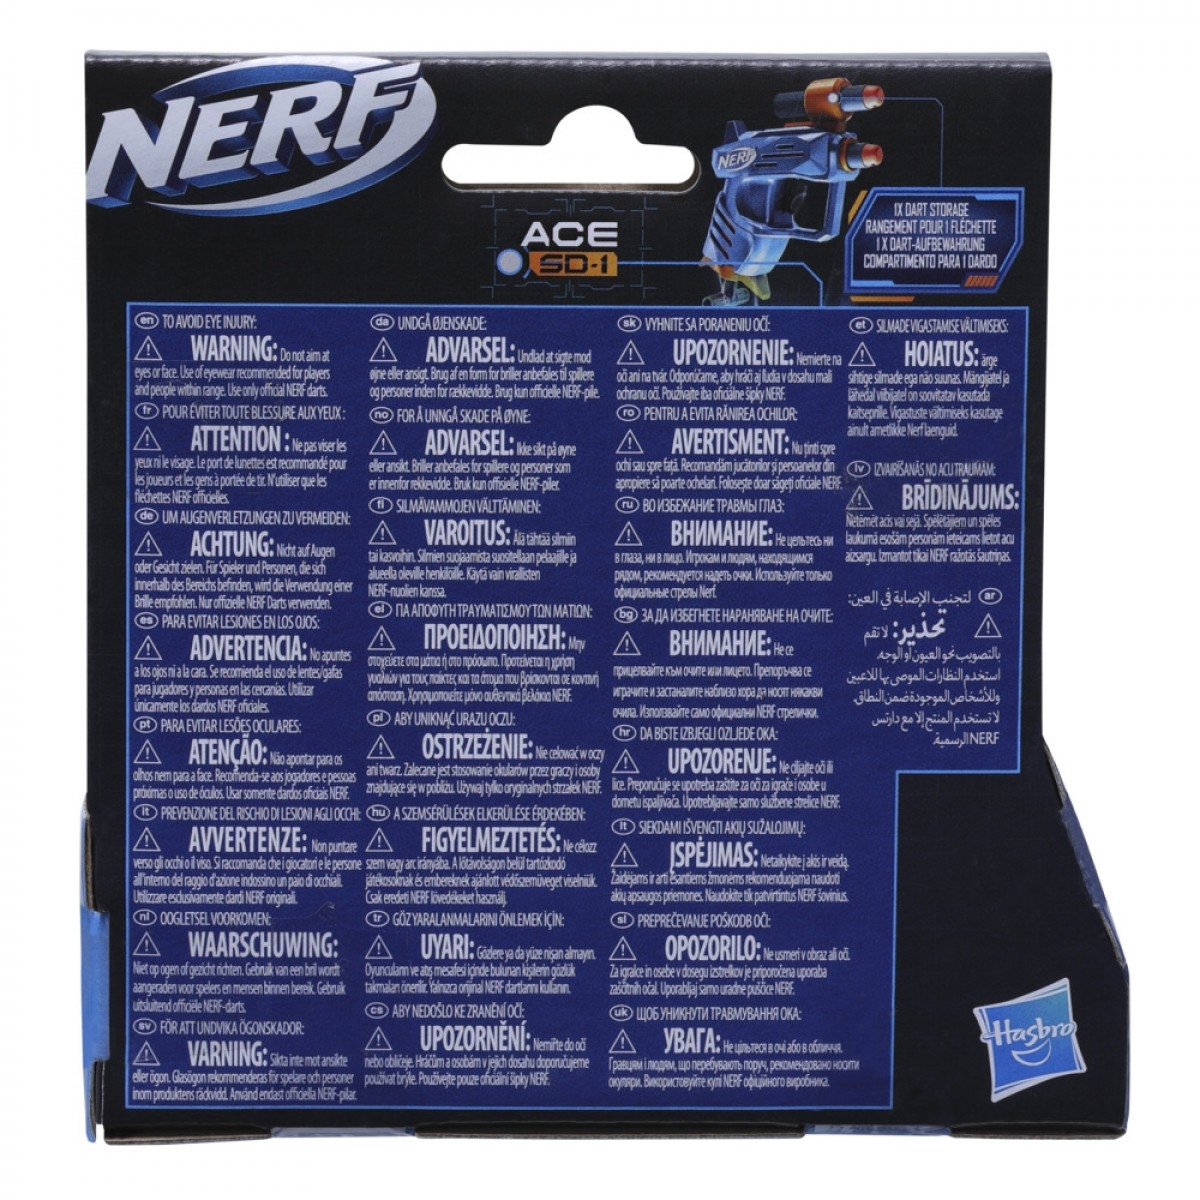 Nerf Elite 2.0 Ace Sd-1 Dart Blaster, 2 Nerf Elite Darts, Pull Down Priming, Nerf Blasters, Kids Outdoor Toys For 8 Yrs+